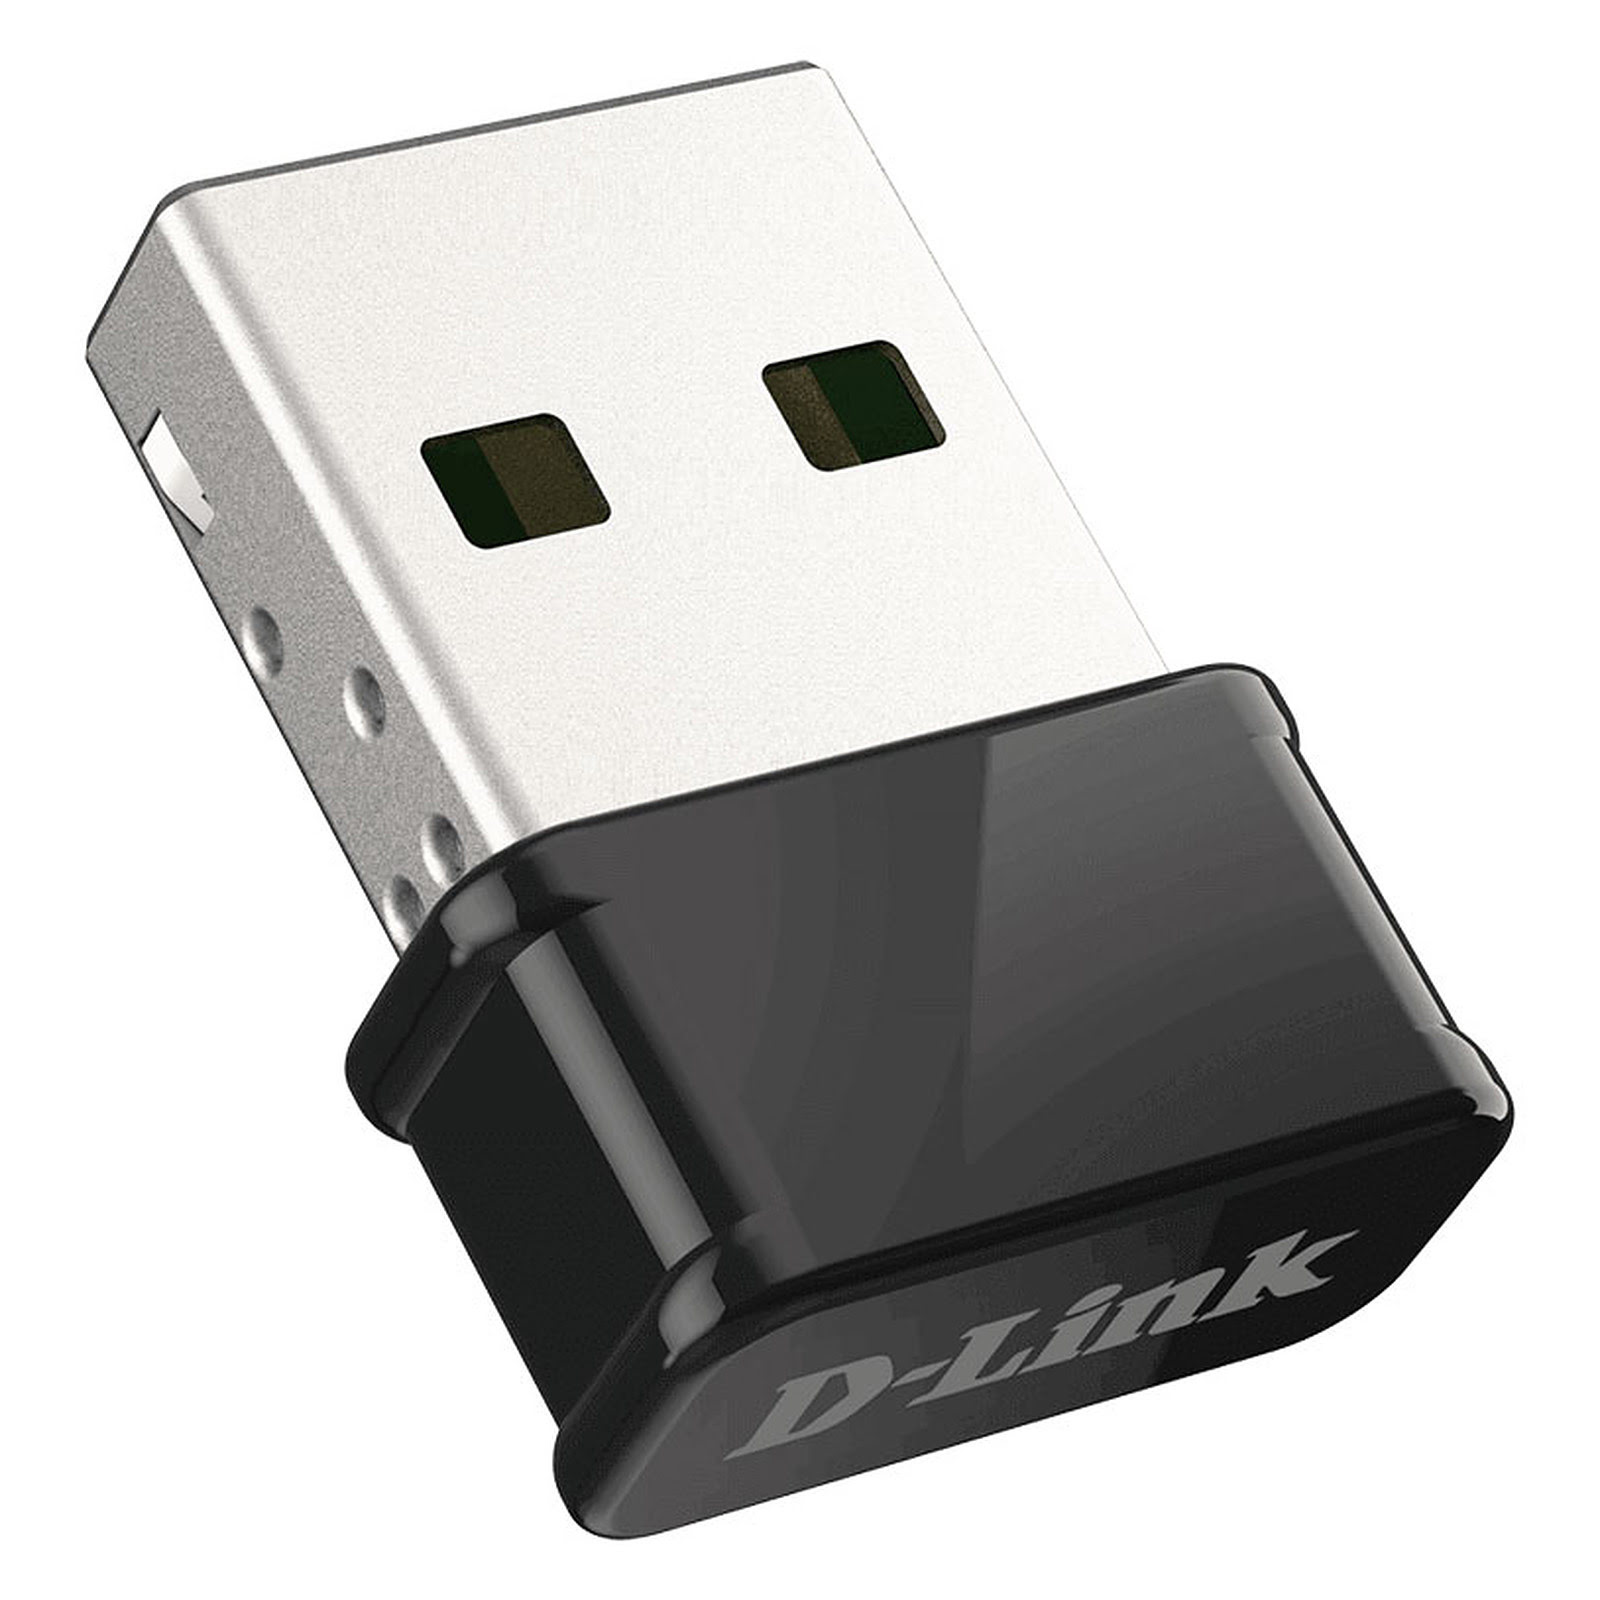 D-Link Clé USB WiFi AC1300 DWA-181 - Carte réseau D-Link - 2